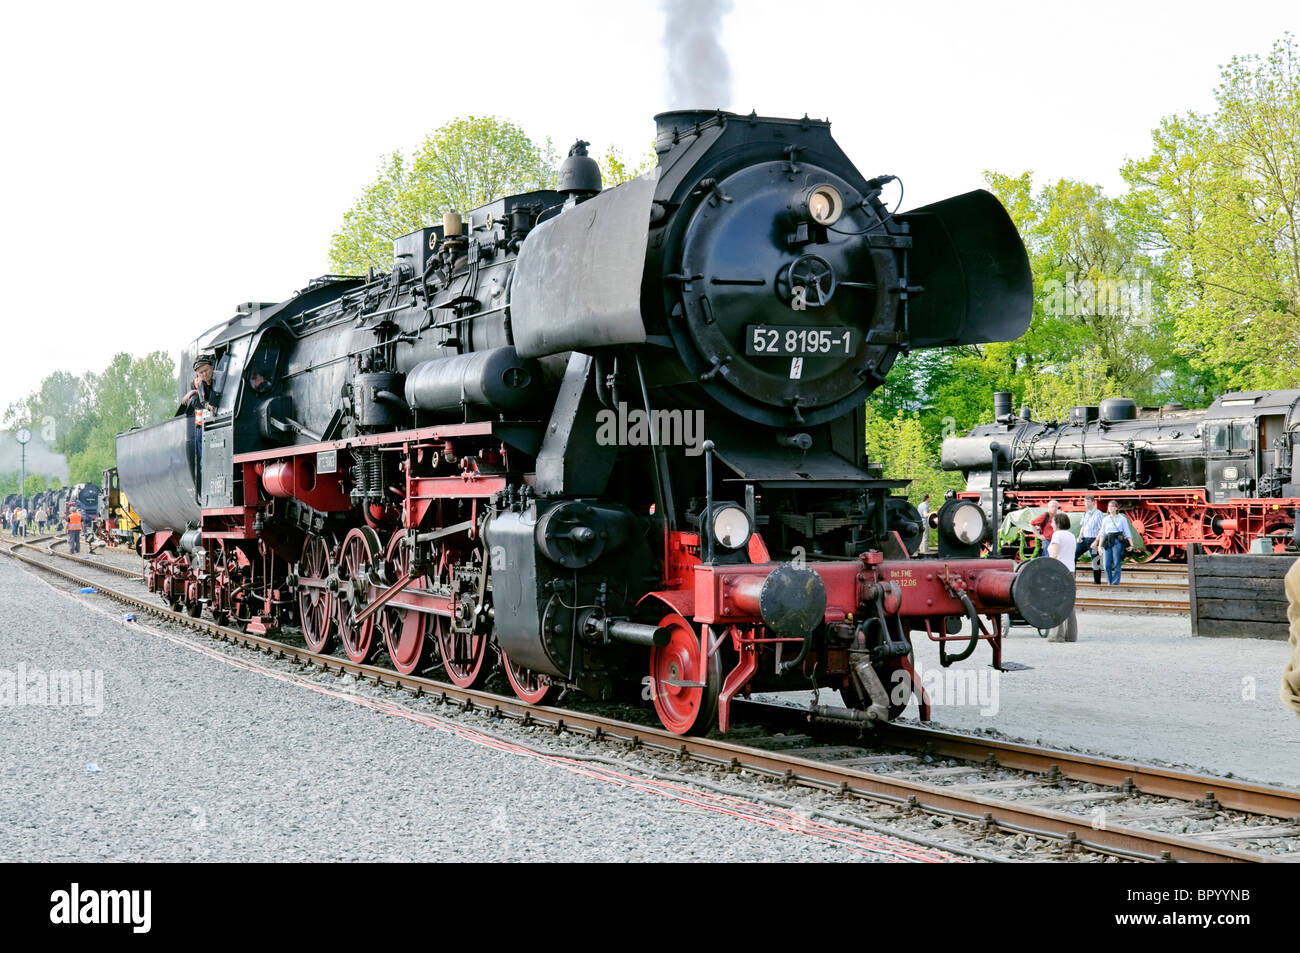 Locomotives à vapeur au Musée de la Locomotive à vapeur allemande, Neuenmarkt, Franconia, Bavaria, Germany. Banque D'Images